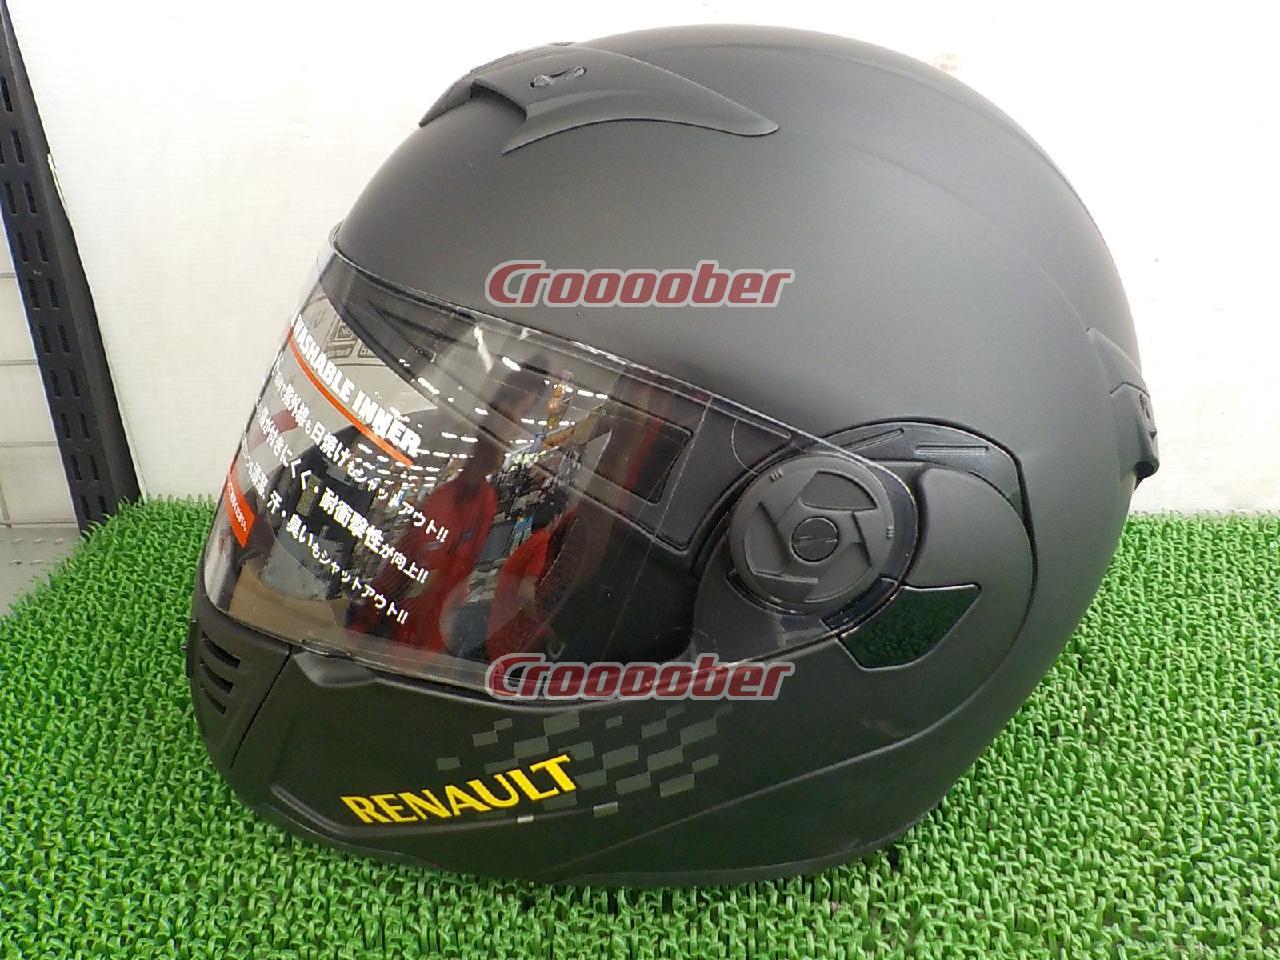 サイズ:フリー57-60cm 石野商会 RN-333 RENAULT(ルノー)システムヘルメット マットブラック | ヘルメット  フルフェイス(二輪)パーツの通販なら | Croooober(クルーバー)